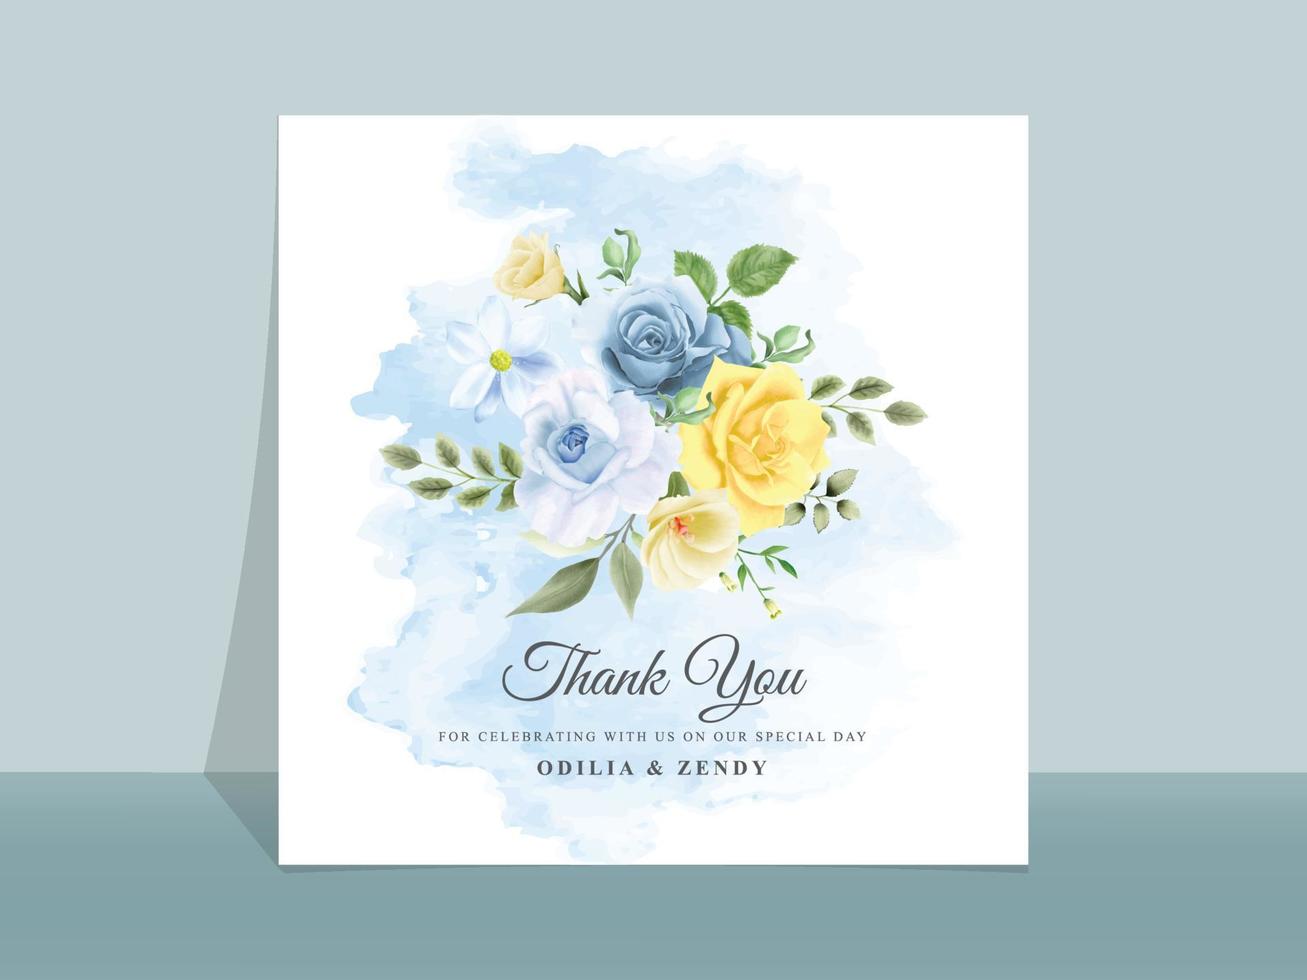 Hochzeitseinladungskarte mit schönen blauen und gelben Blumen vektor